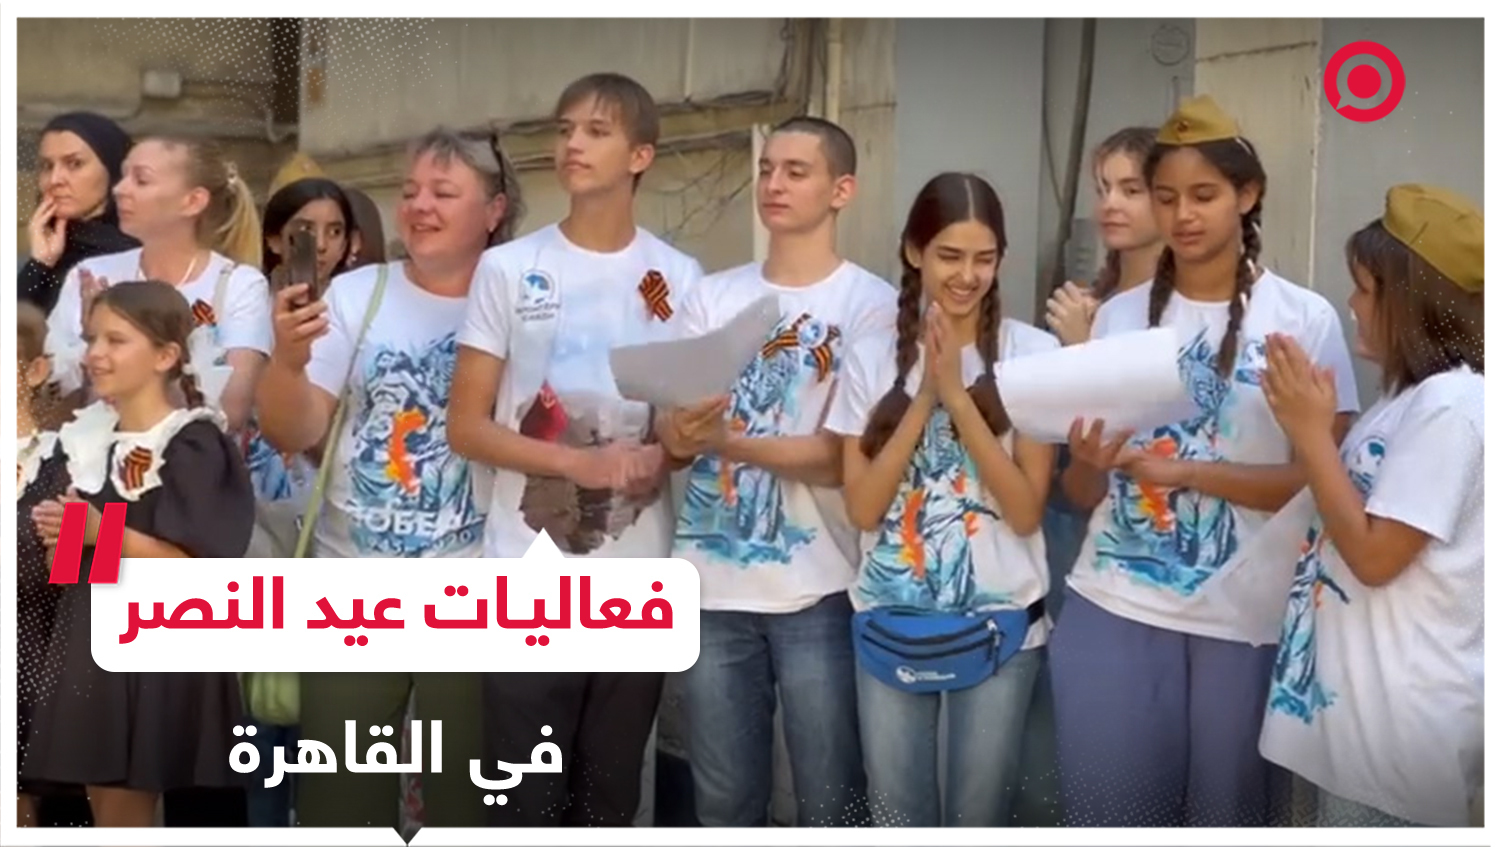 مشاهد من البيت الروسي بالقاهرة لبعض فعاليات عيد النصر